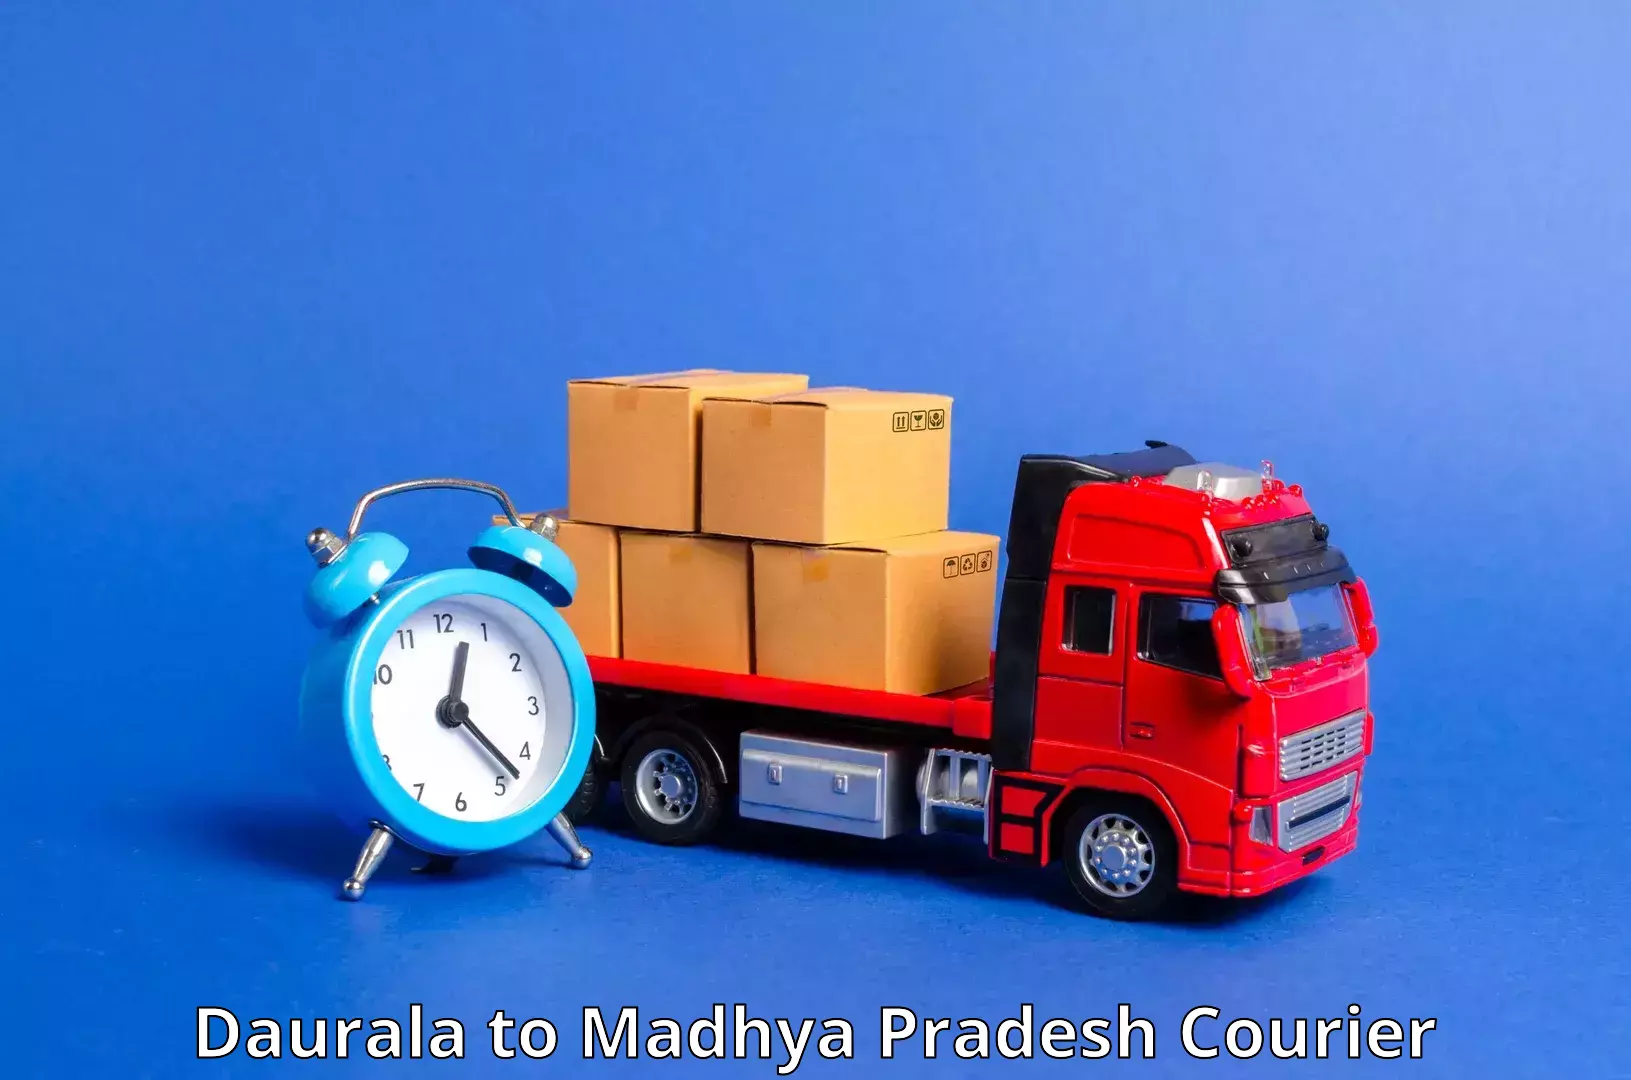 Efficient parcel service Daurala to Churhat